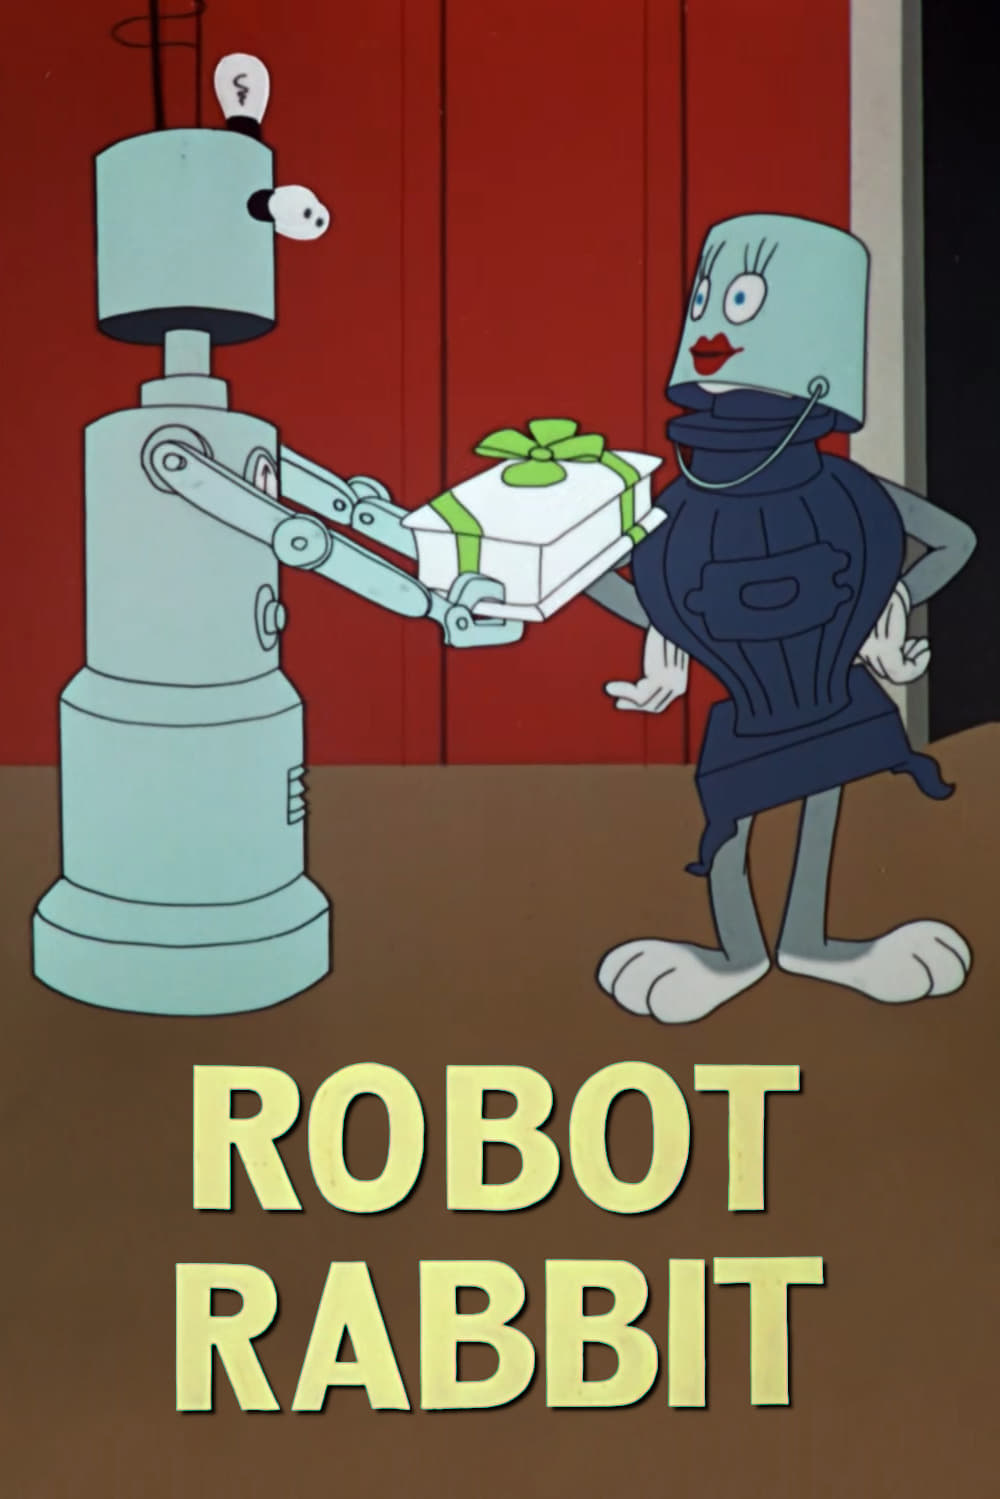 Bobo Robot